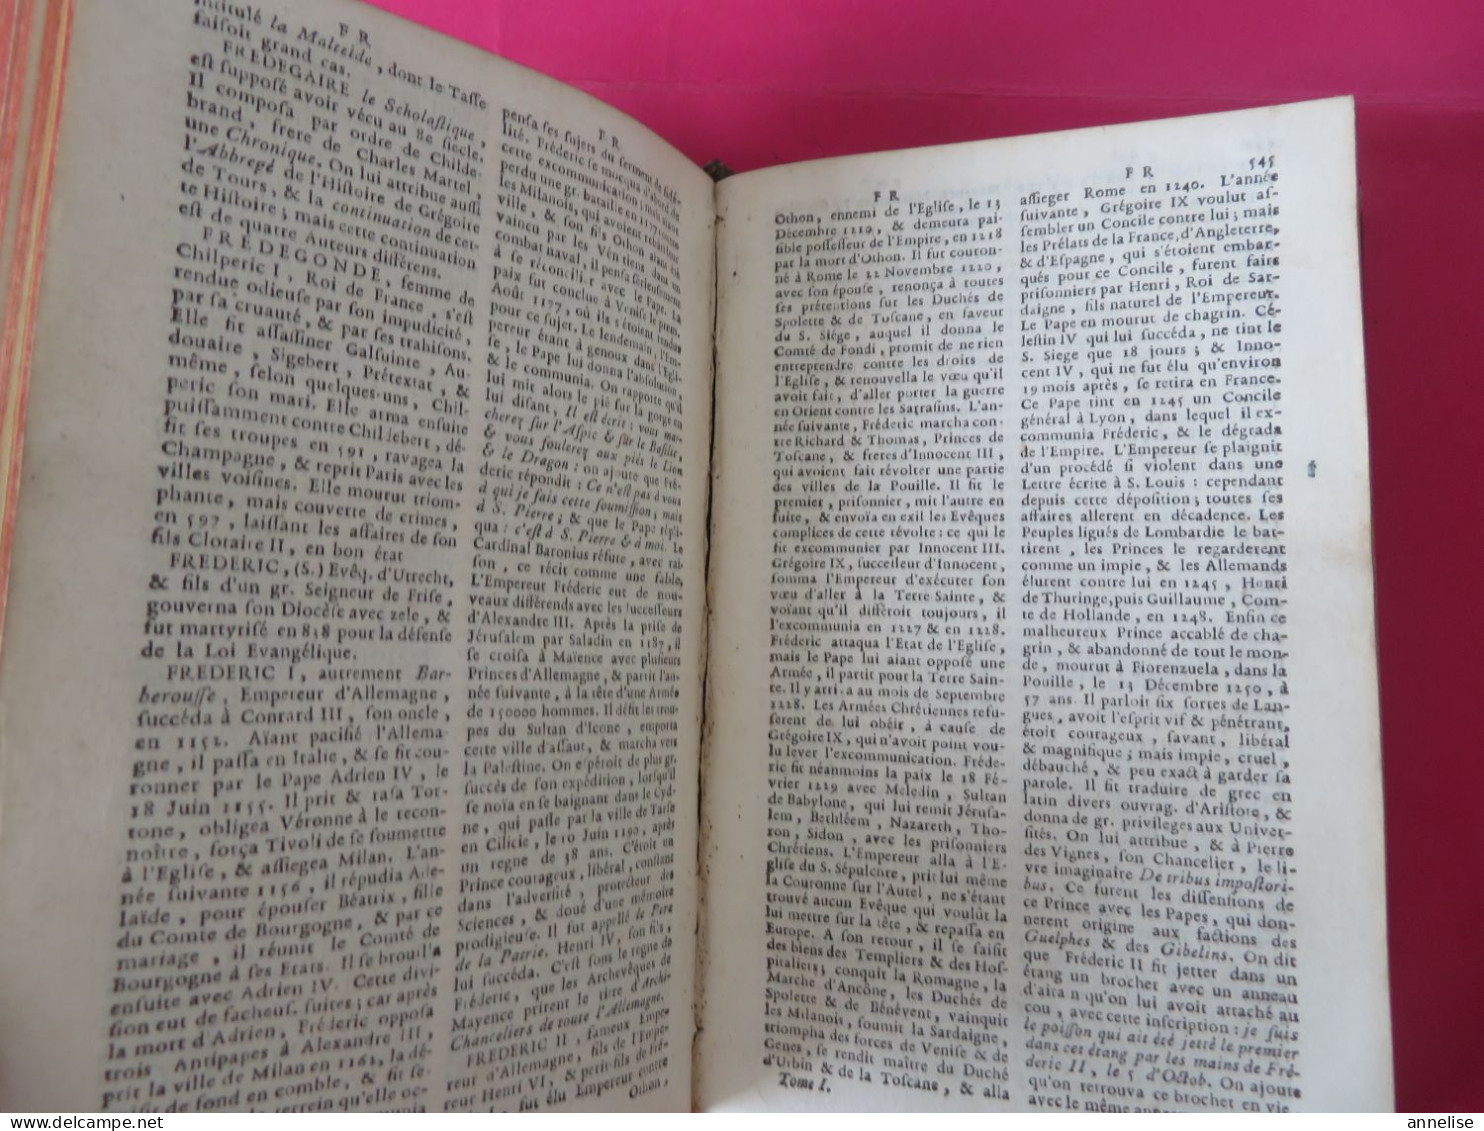 1760 Dictionnaire Historique Histoire des Patriarches, Princes hébreux, Empereurs, rois.. Abbé Ladvocat 2 Tomes